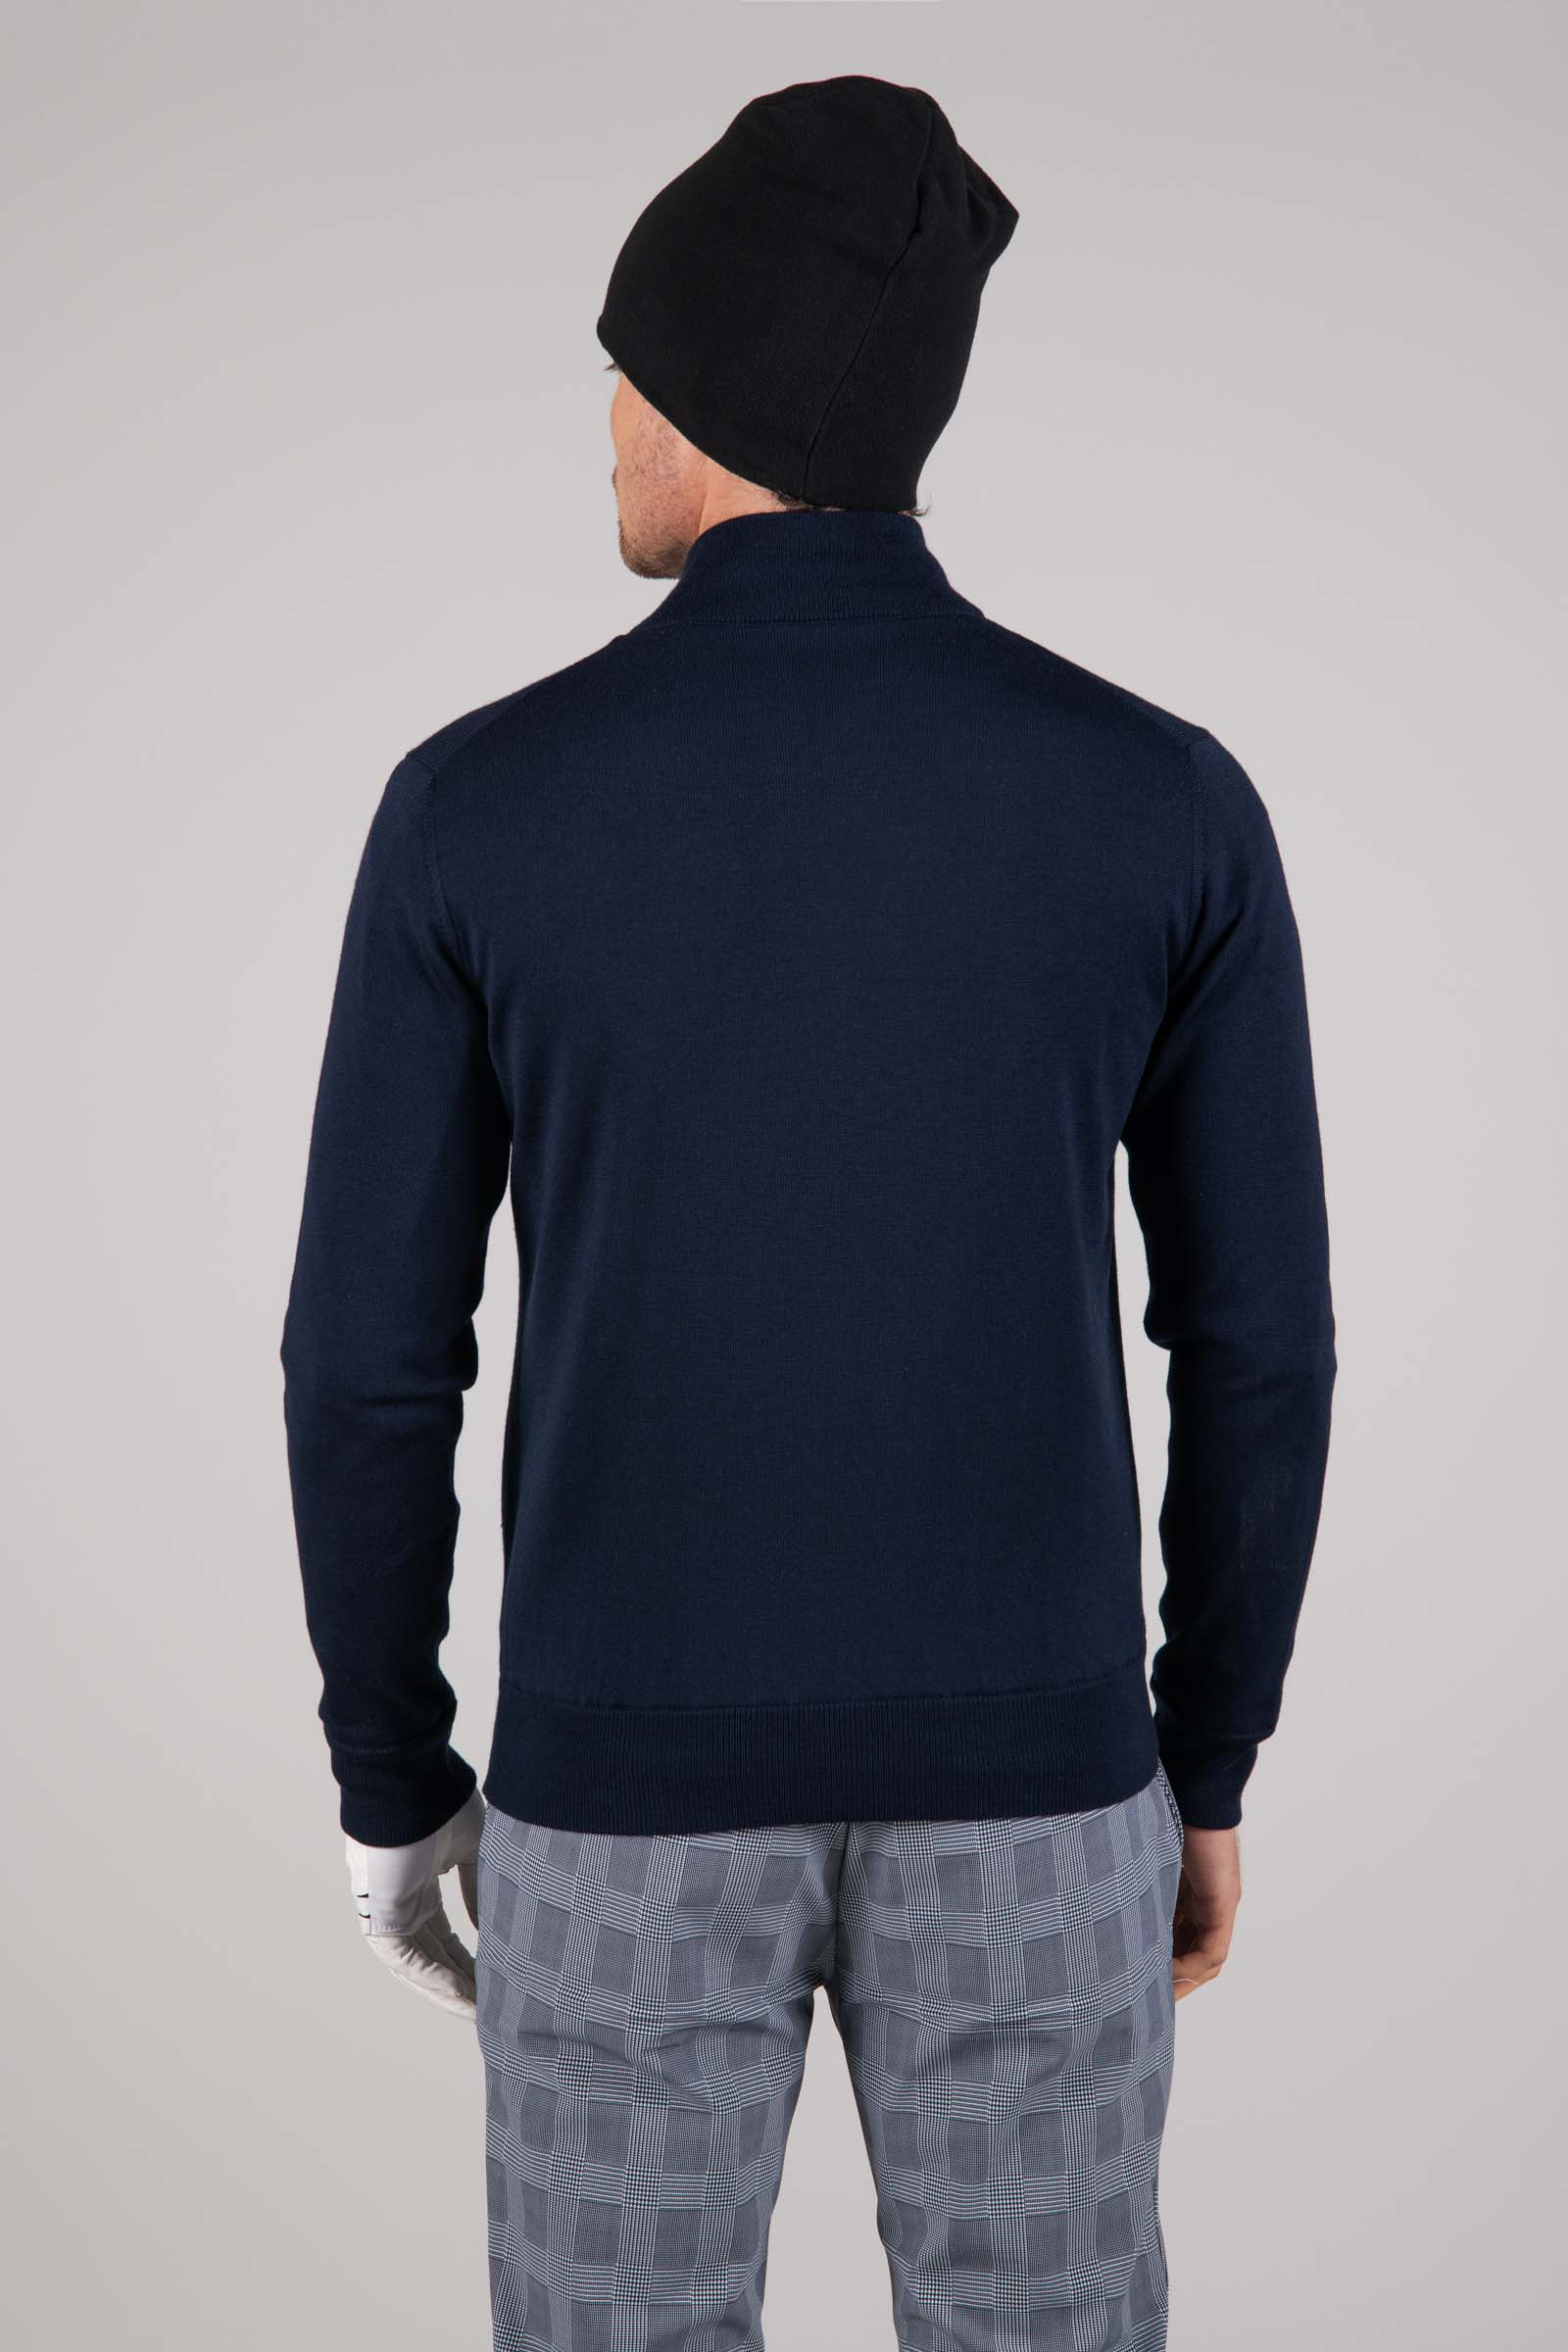 Maglione antivento in lana - BLUE NAVY - Abbigliamento sportivo | Hydrogen